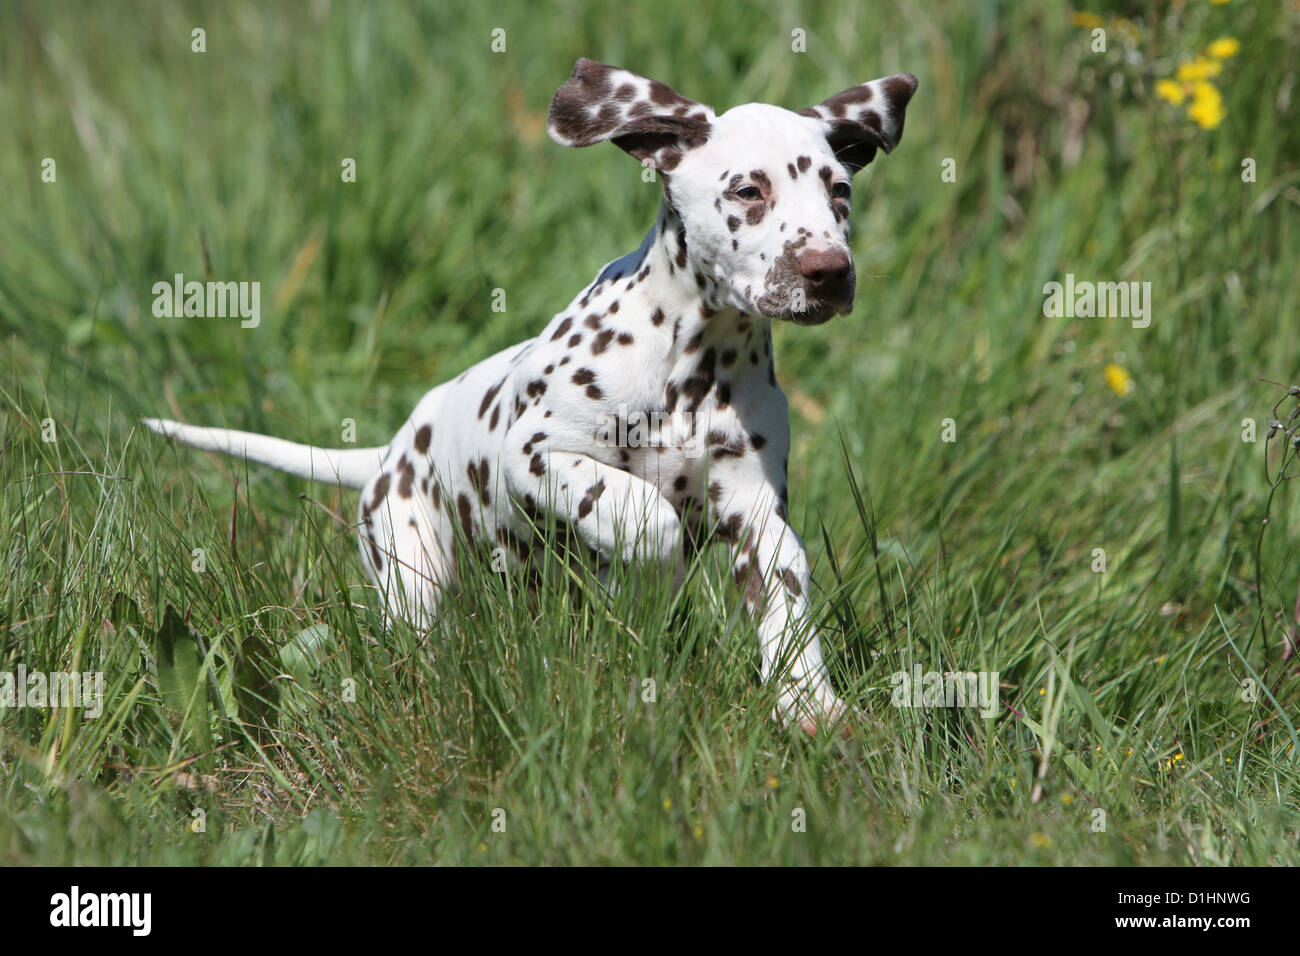 Hund Dalmatiner / Dalmatiner / Dalmatien Welpen laufen auf einer Wiese  Stockfotografie - Alamy